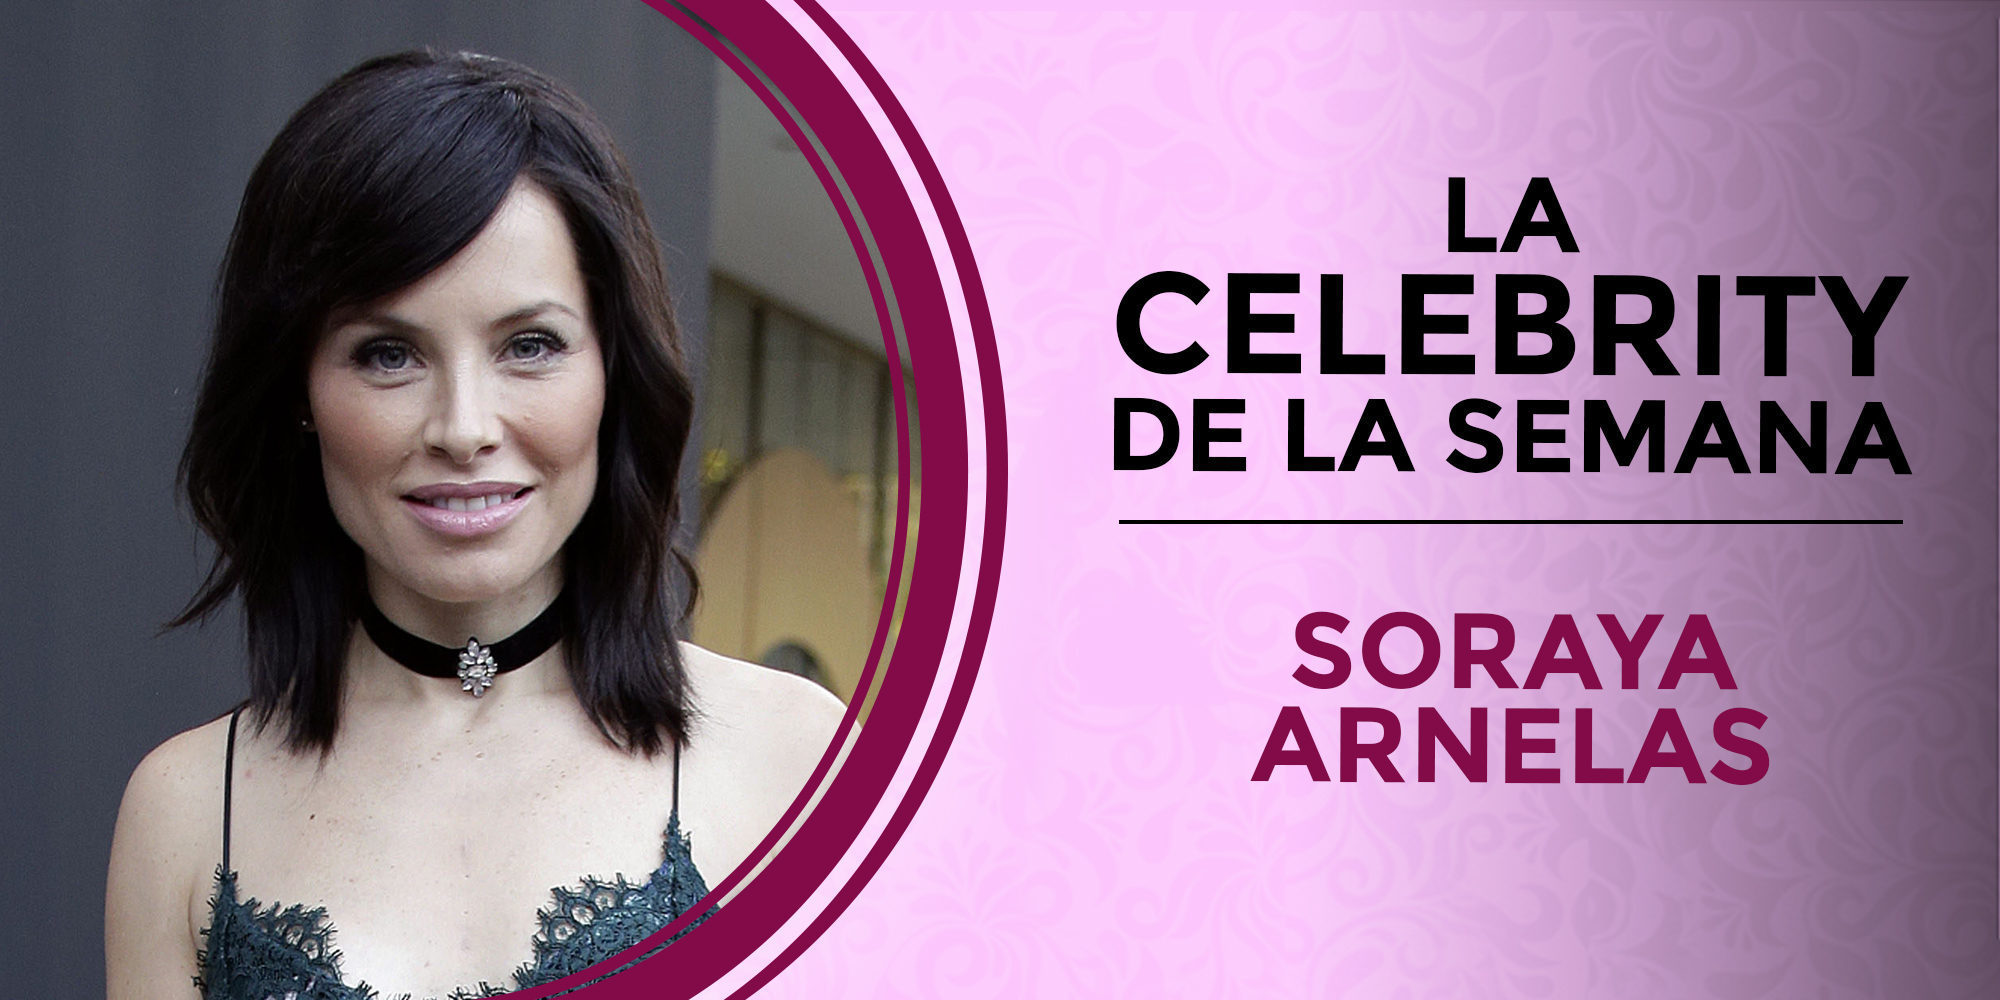 Soraya Arnelas se convierte en la celebrity de la semana tras anunciar su soñado embarazo